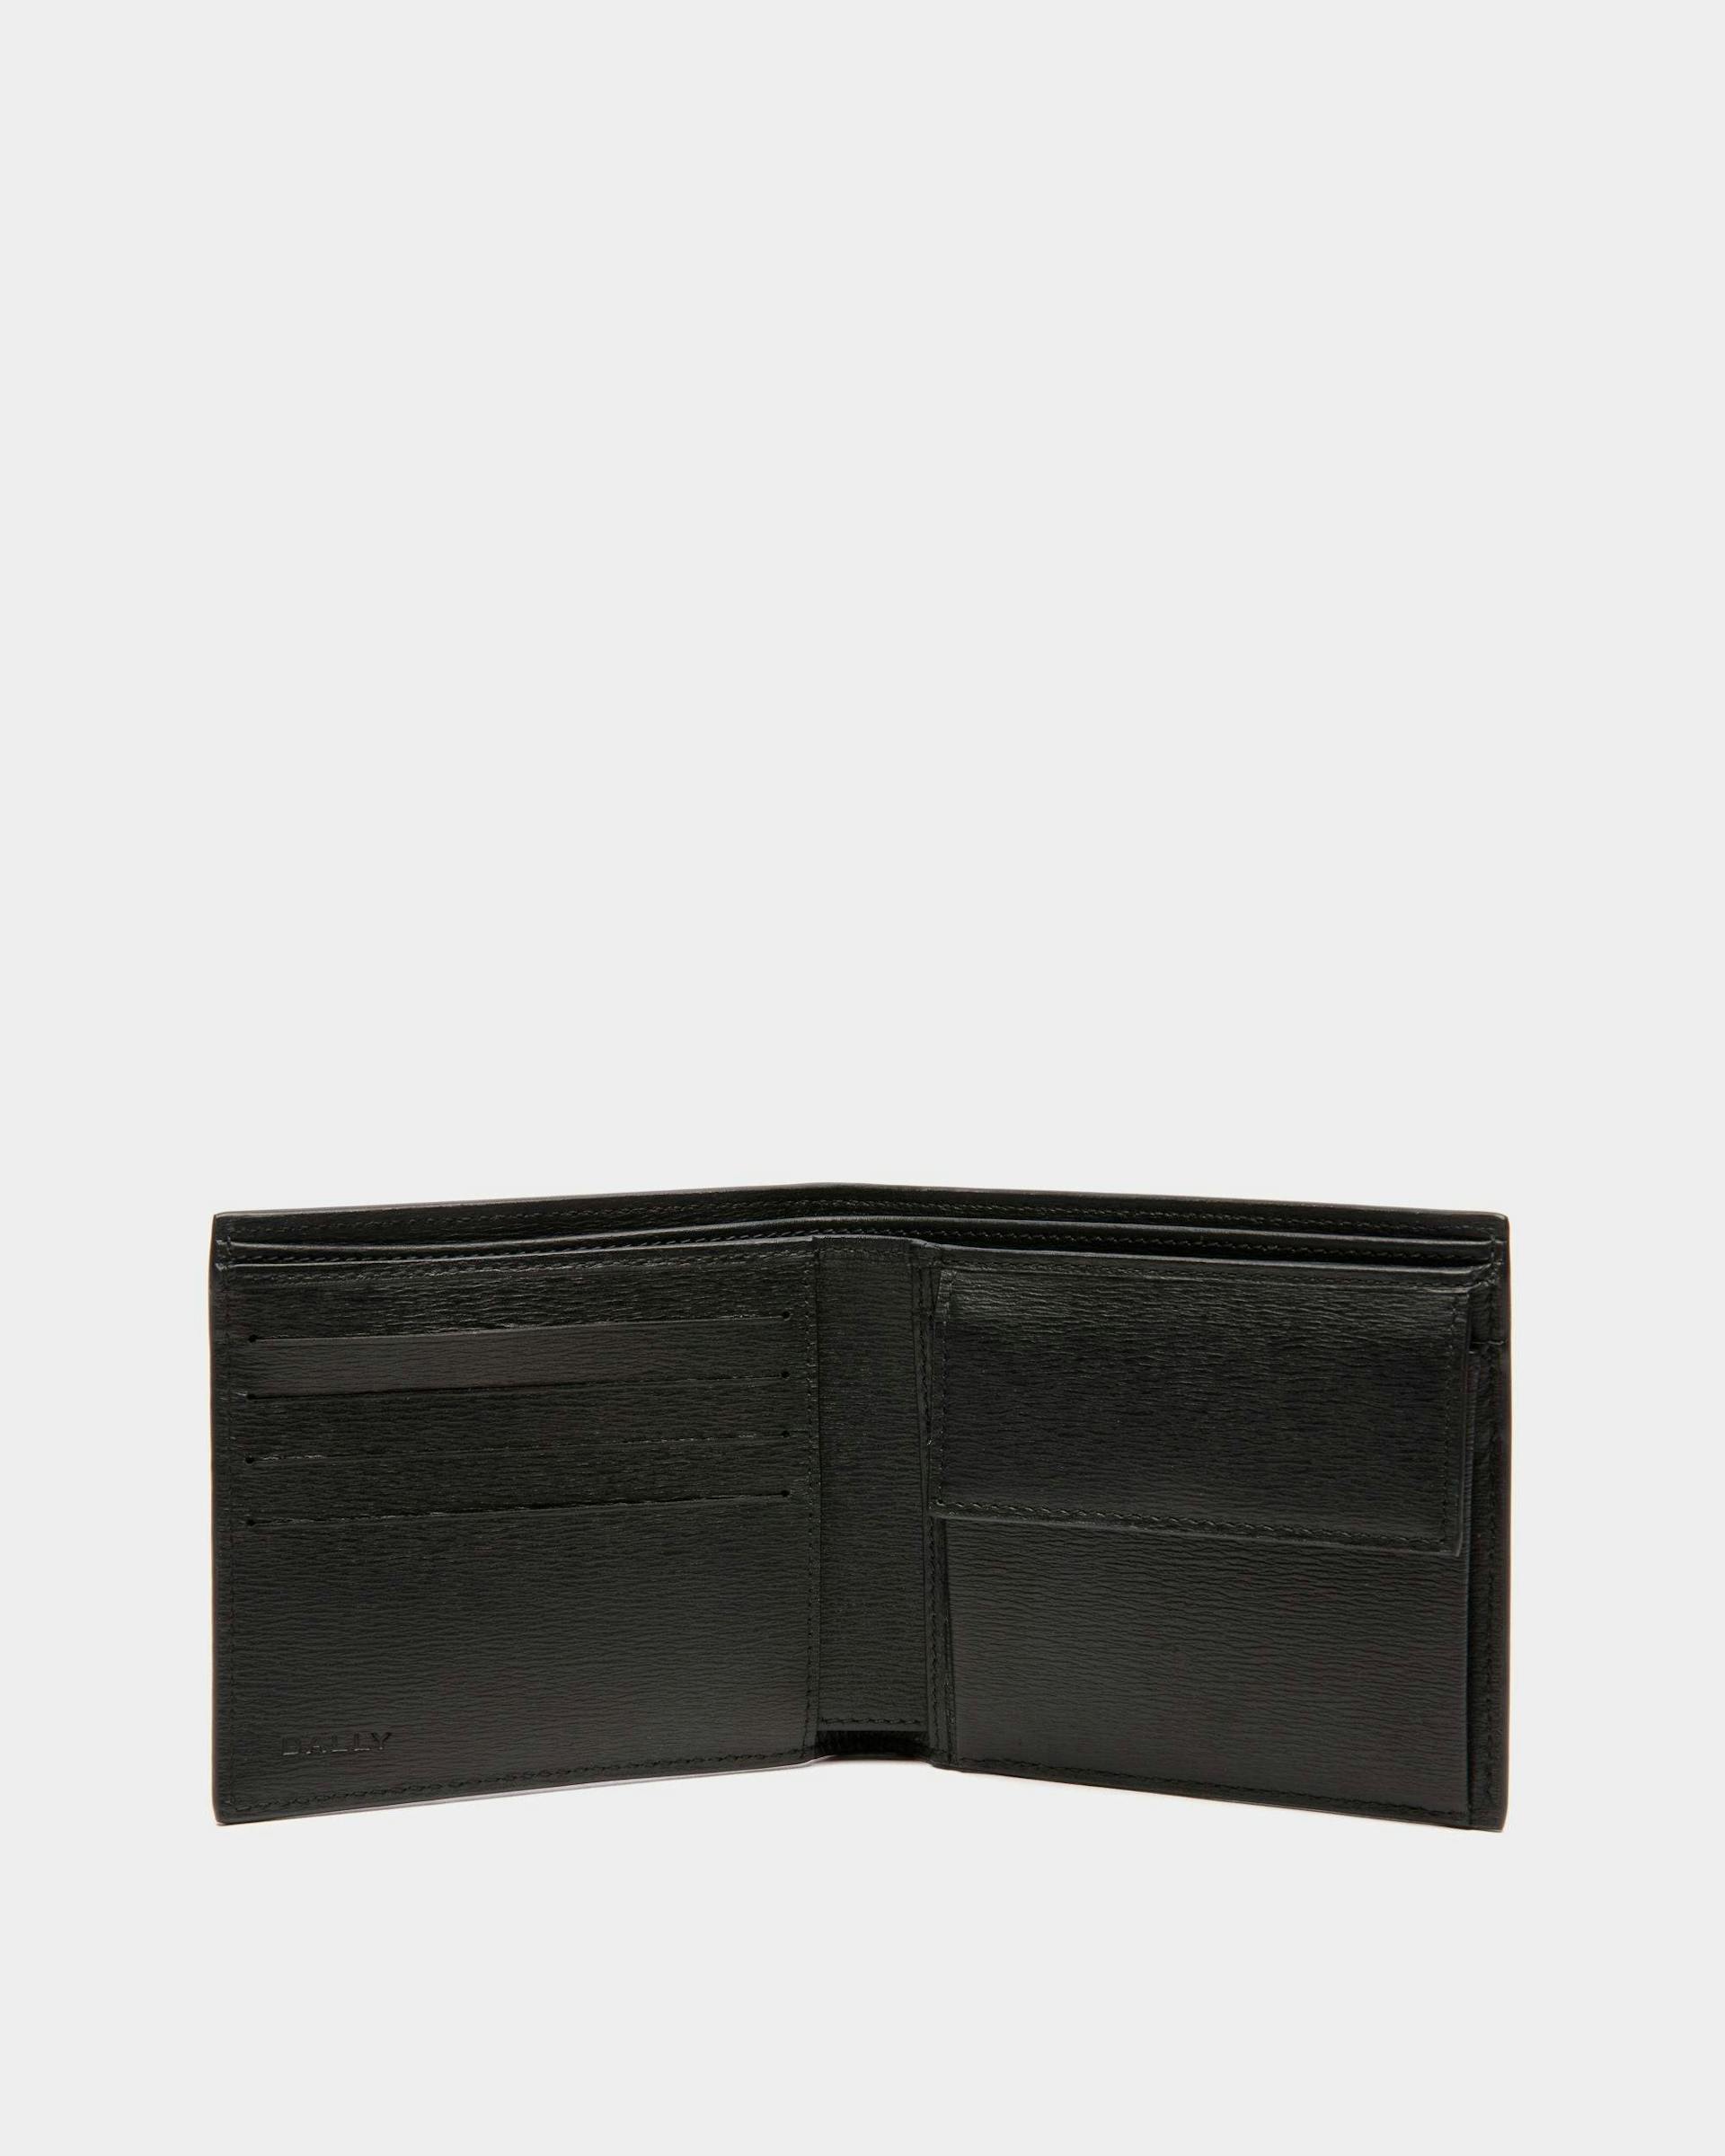 Men's Crossing Bifold Wallet in Leather | Bally | Still Life Open / Inside